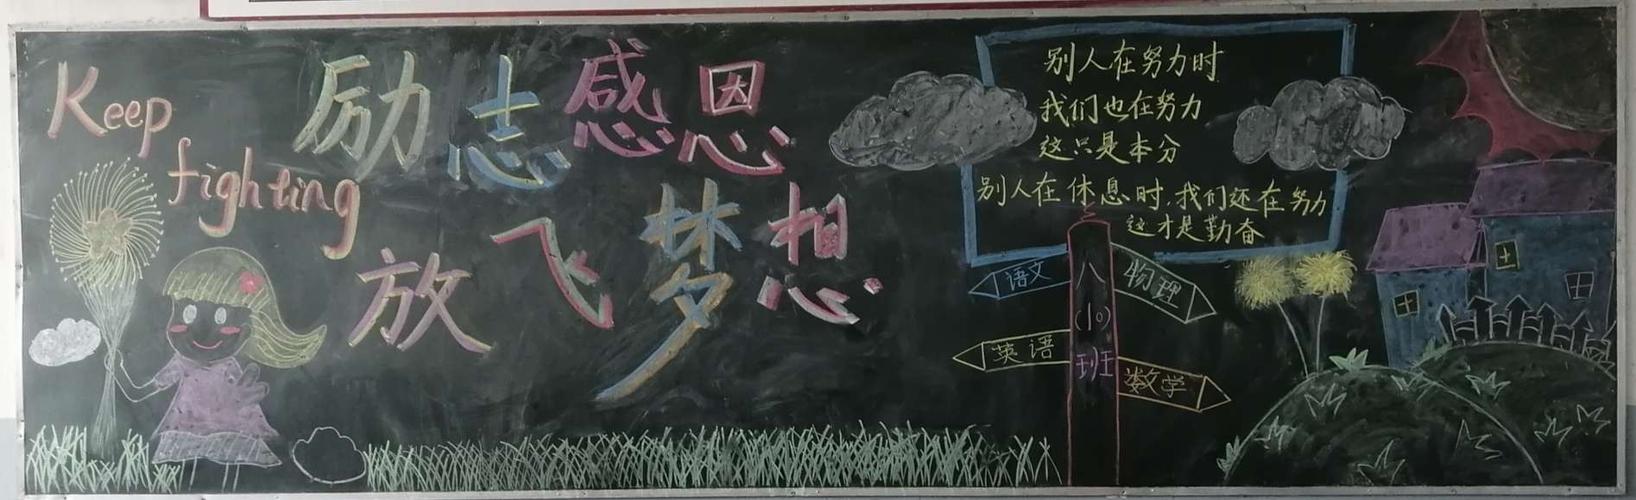 励志感恩放飞理想潢川县黄冈实验学校八年级举行主题黑板报